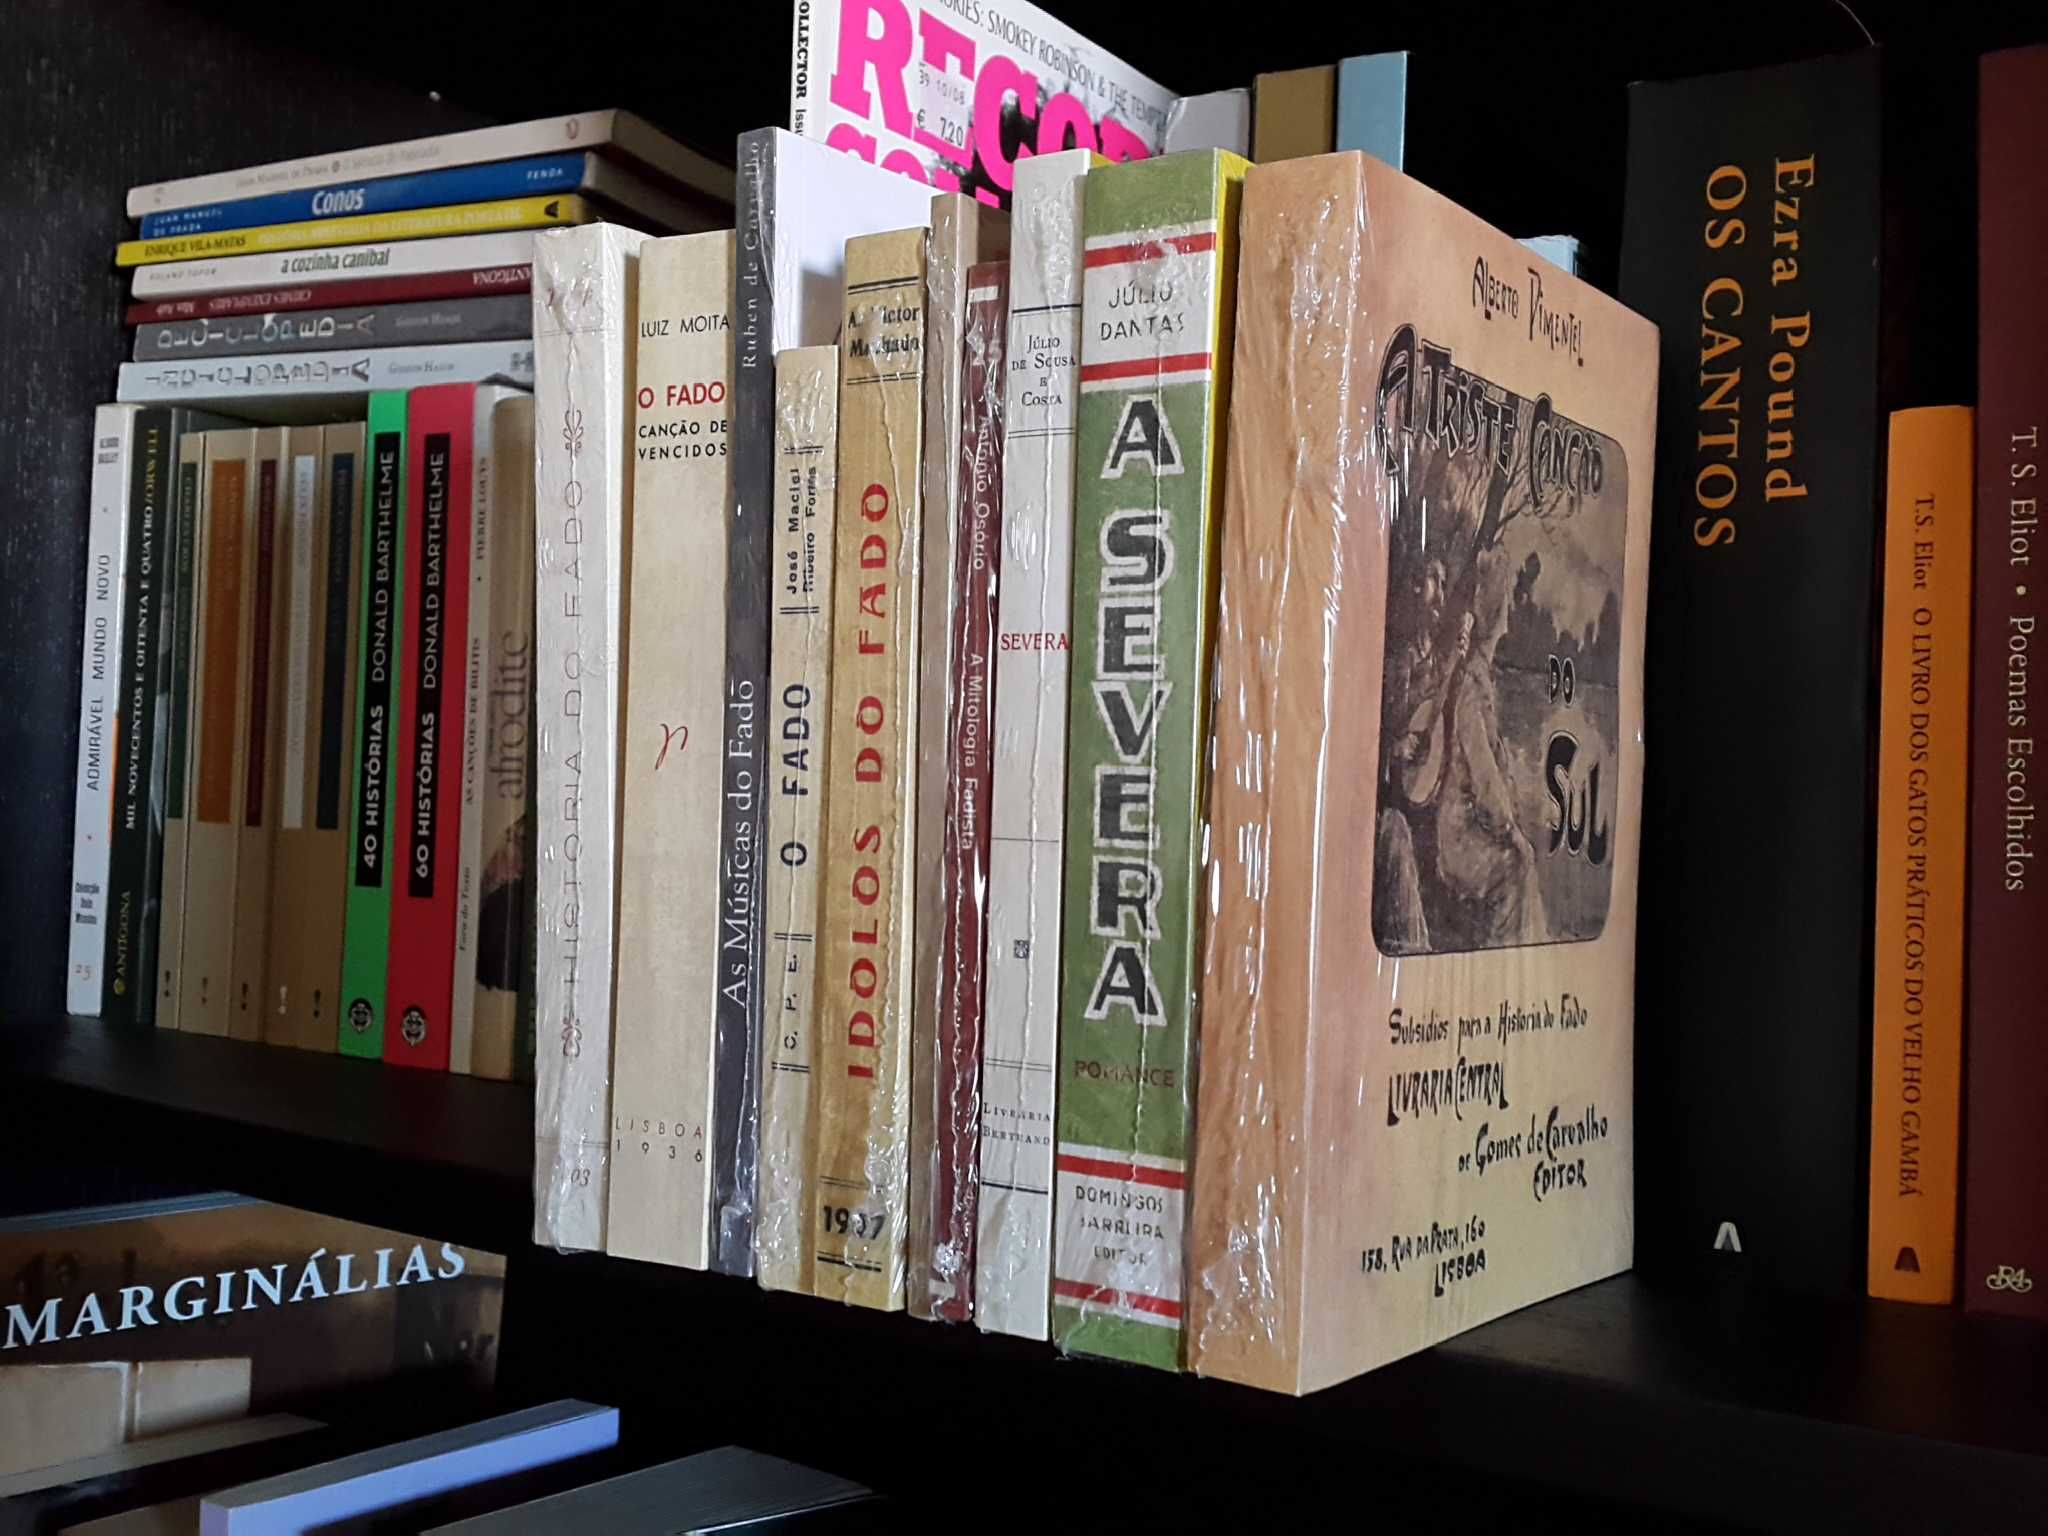 Os Livros Mais Afamados do Fado (10 vols., colecção completa)